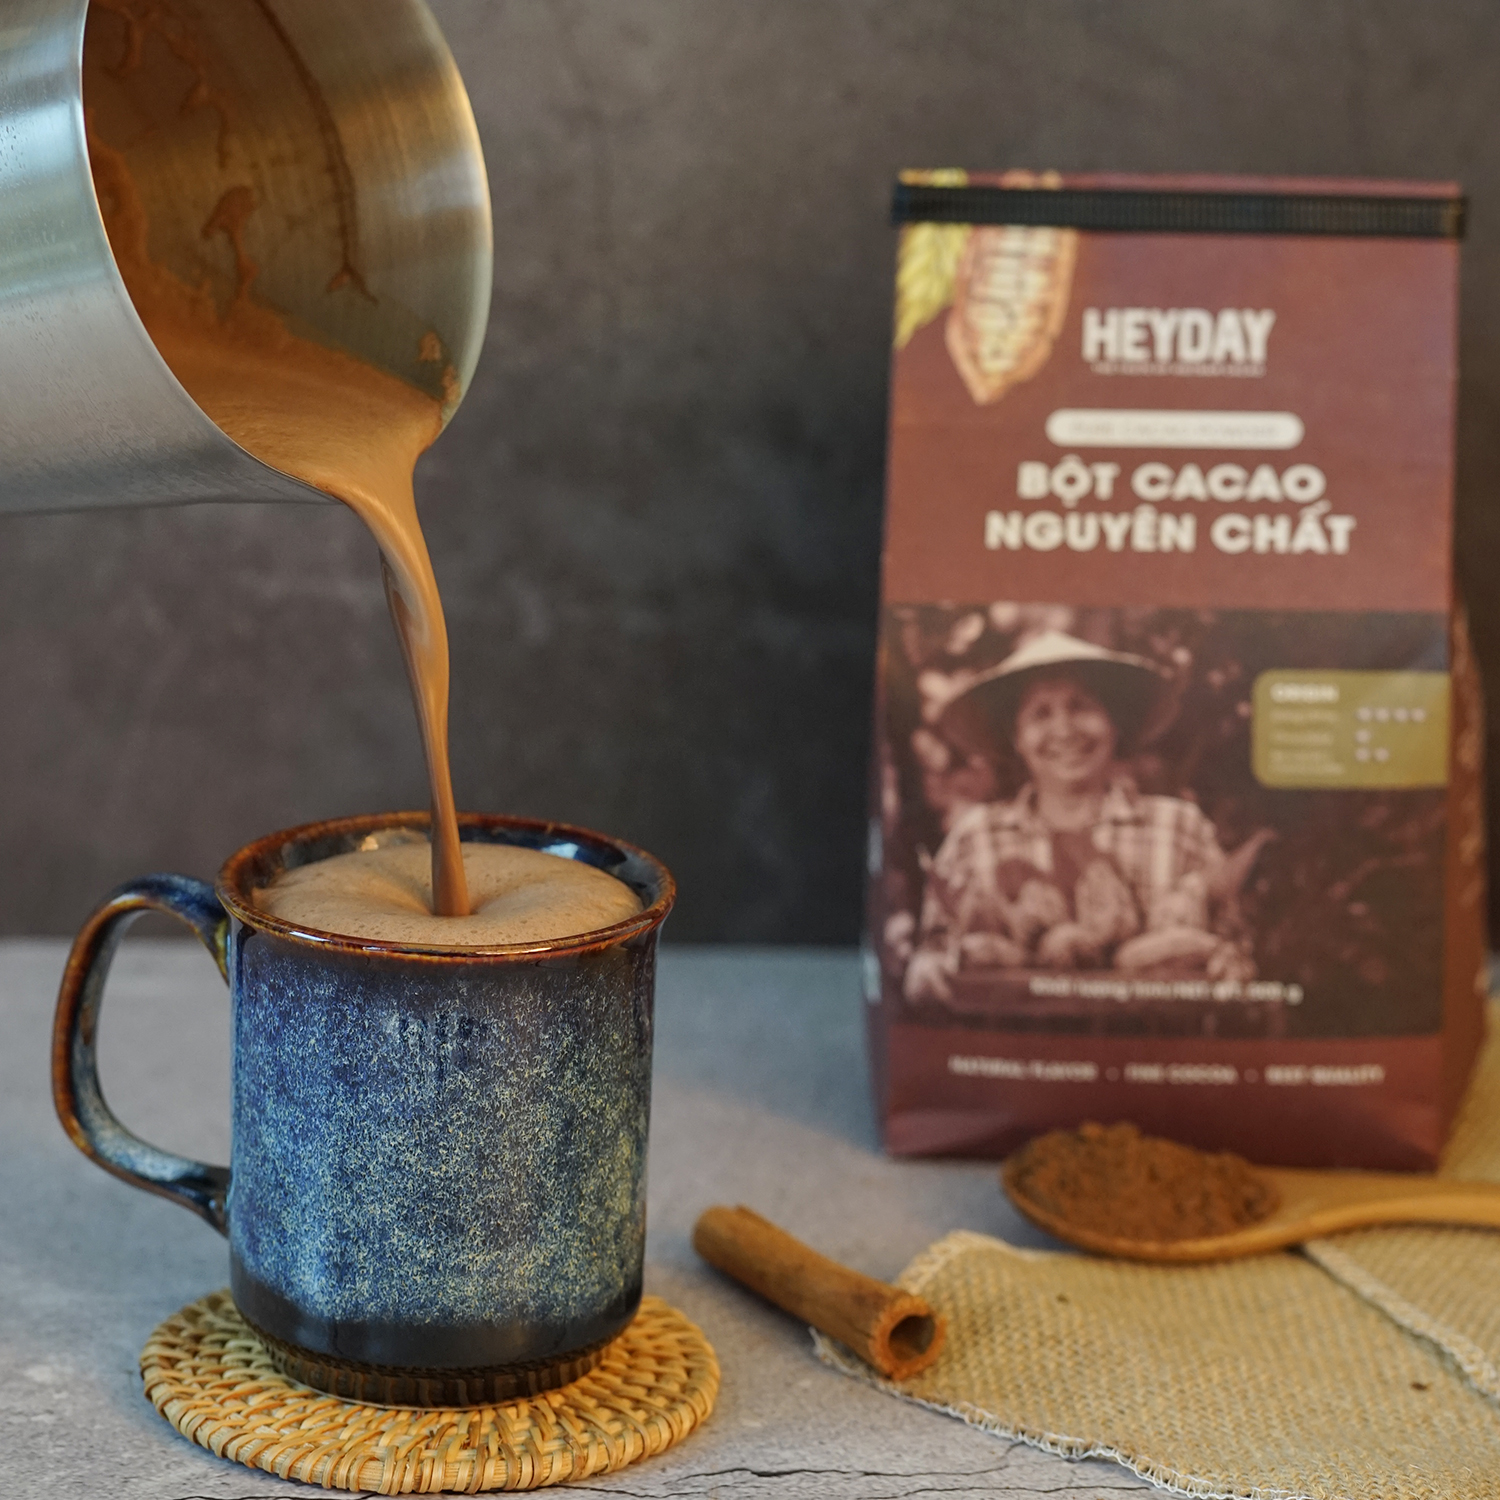 Heyday Bột Cacao Nguyên Chất Không Đường Việt Nam - Dòng Origin - Chứng Nhận UTZ - Hỗ Trợ Giảm Cân - Túi Giấy 250g